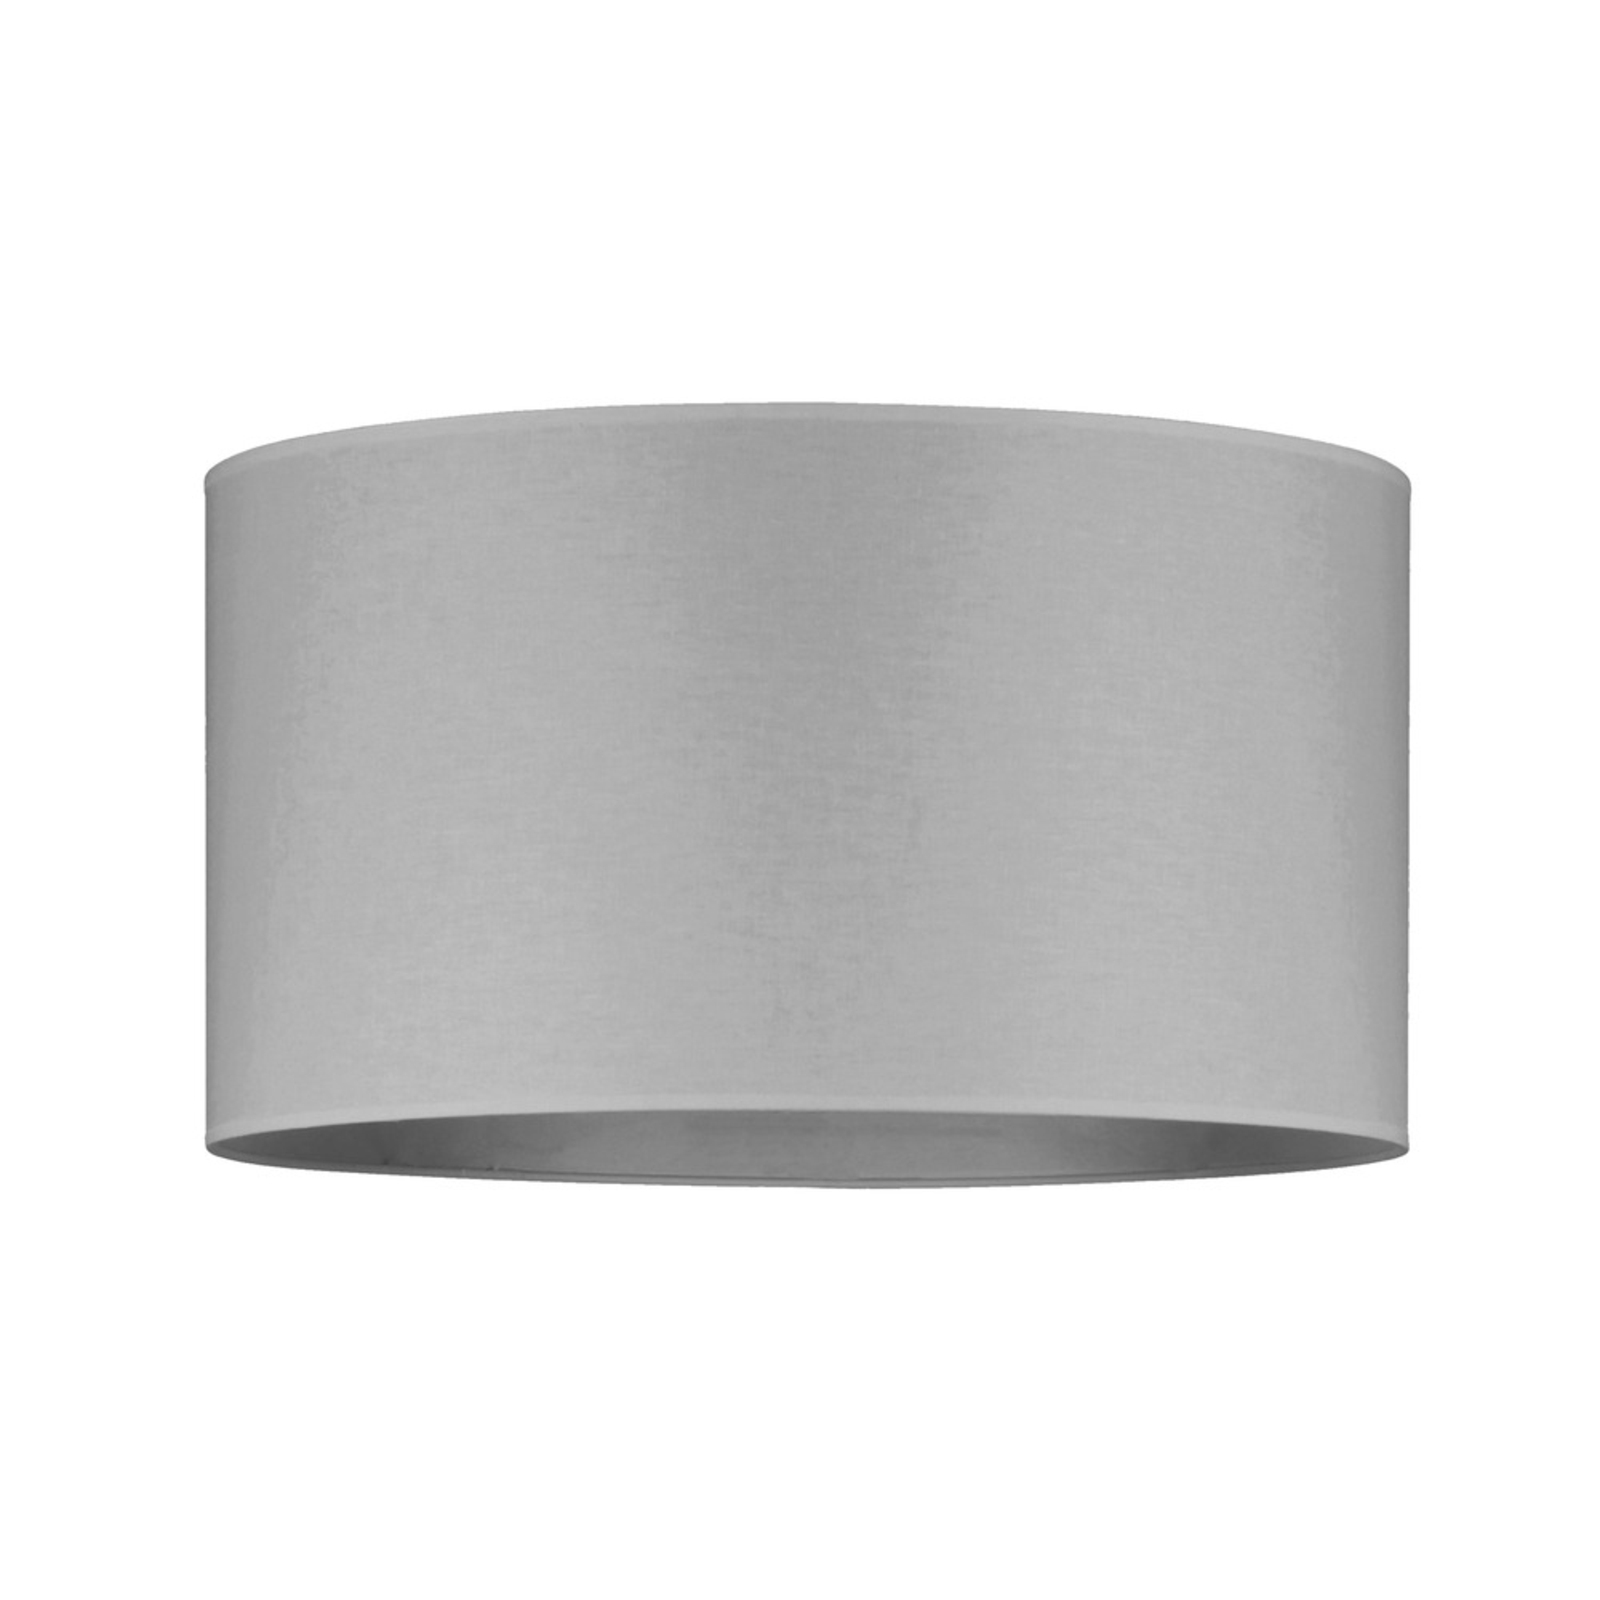 Corralee lampeskærm, Ø 50 cm, højde 25 cm, grå